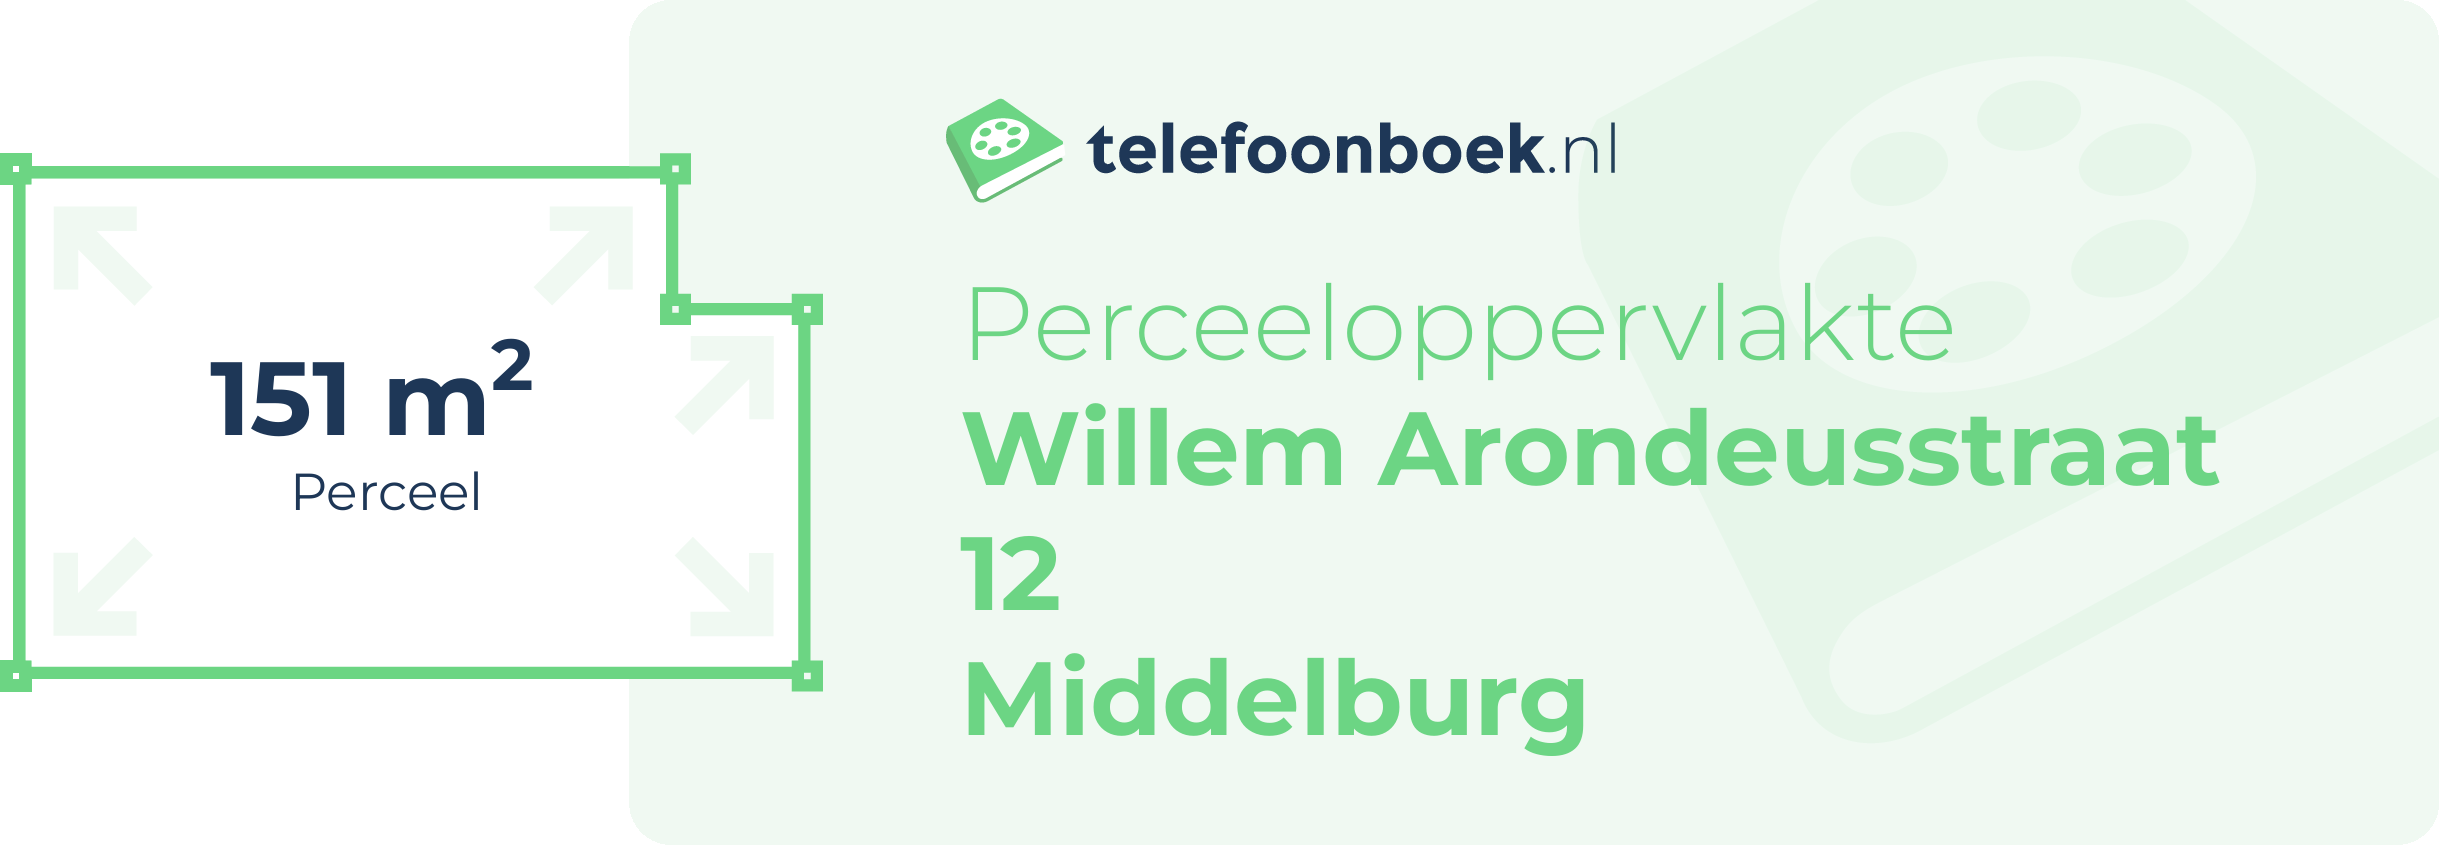 Perceeloppervlakte Willem Arondeusstraat 12 Middelburg